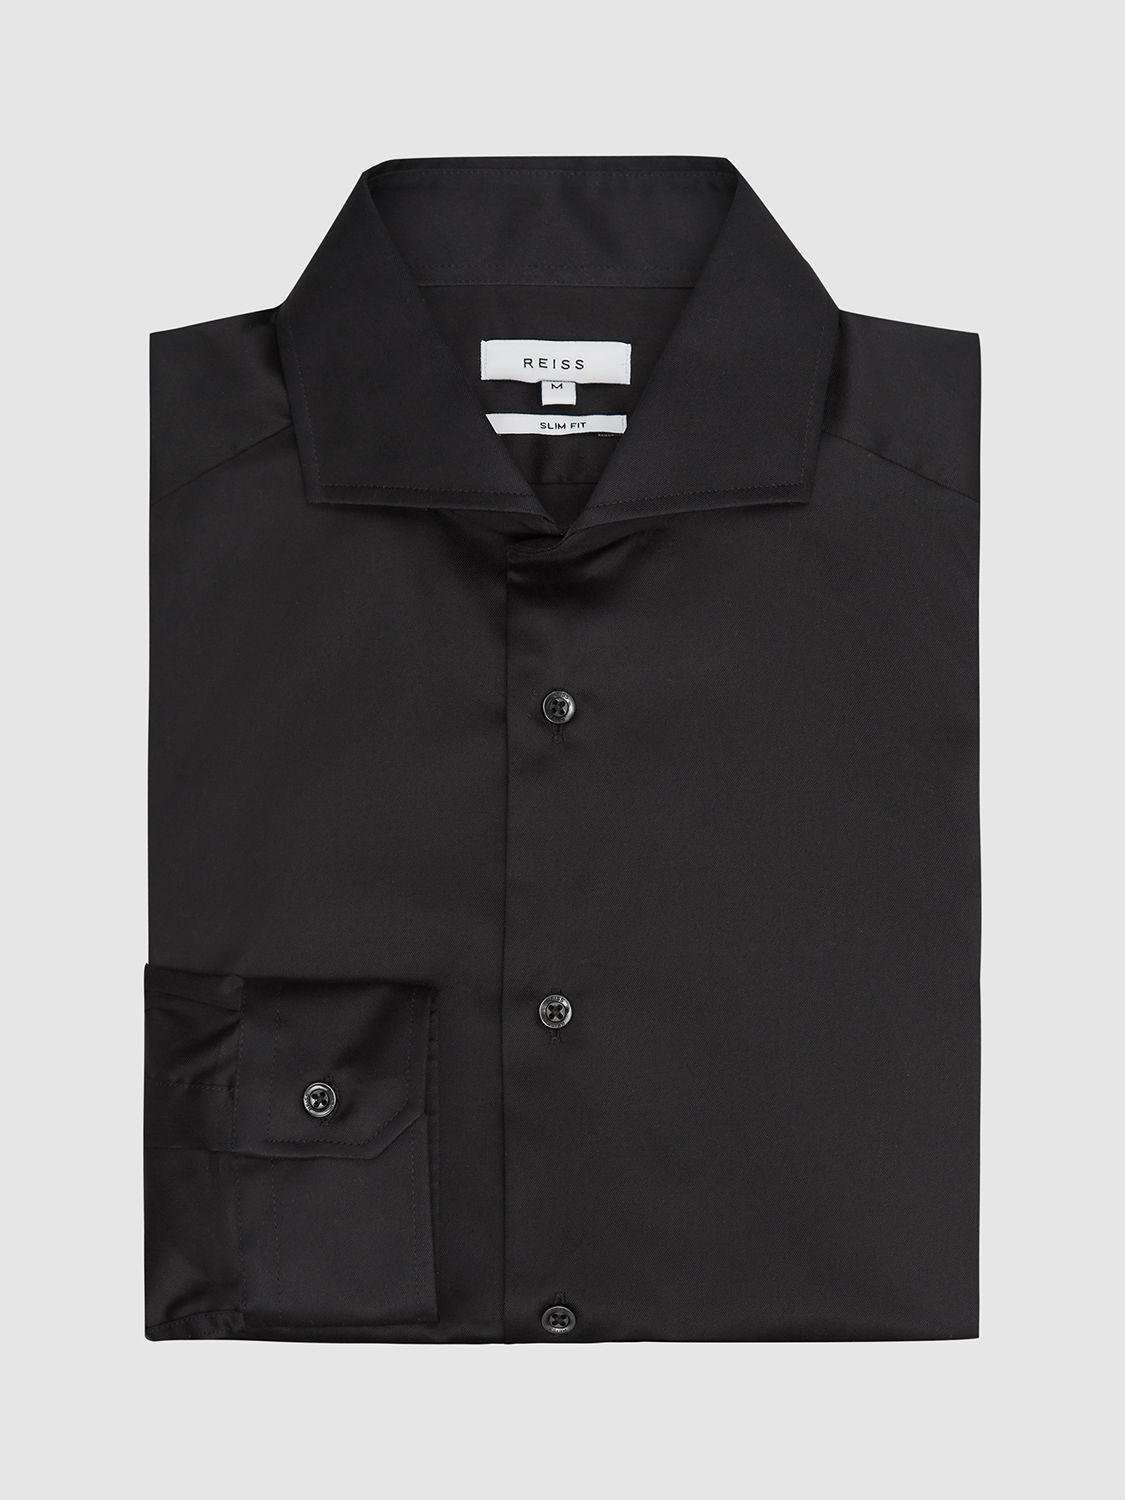 Reiss Storm Cotton Twill Slim Fit Shirt, Black, XS